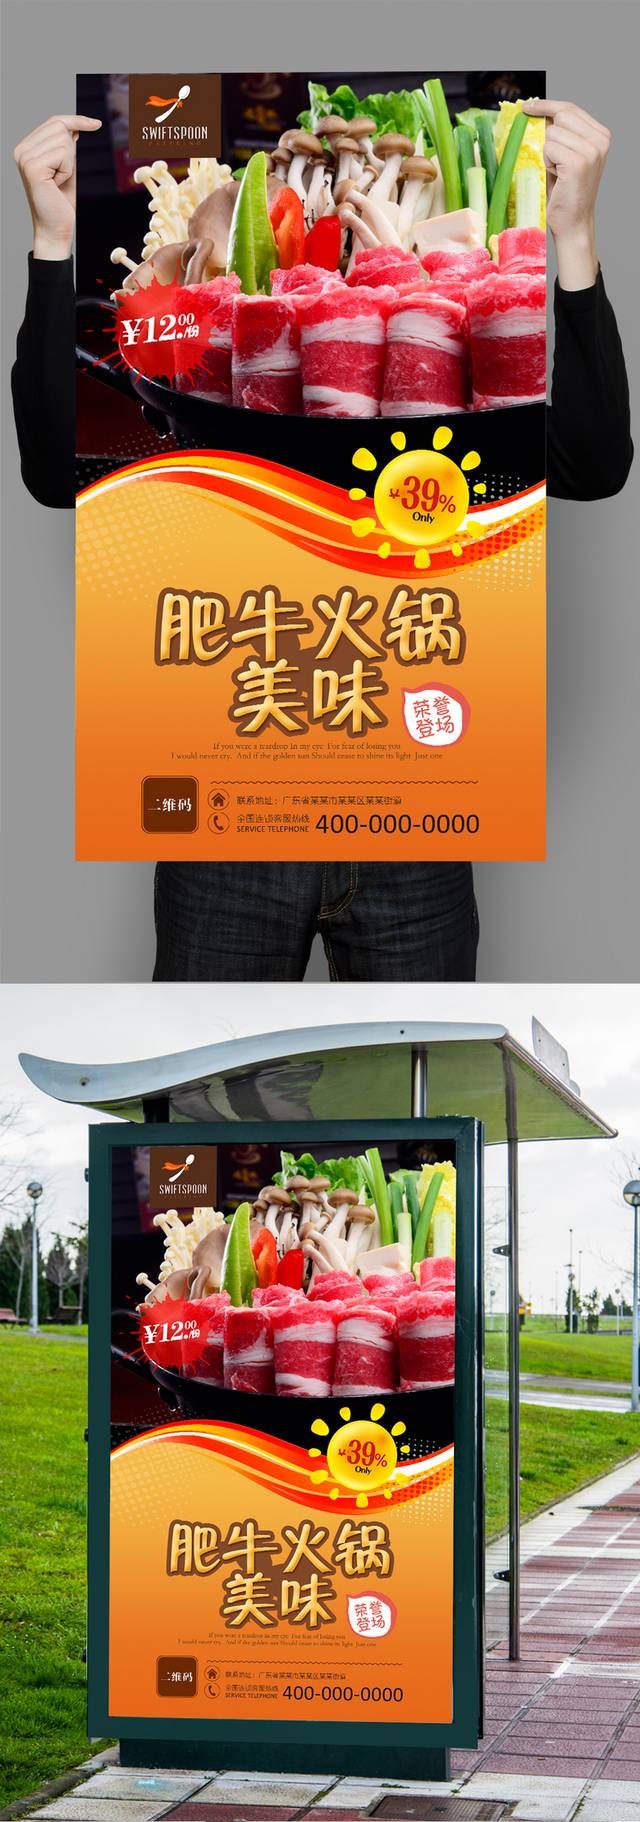 高清肥牛火锅宣传海报模板